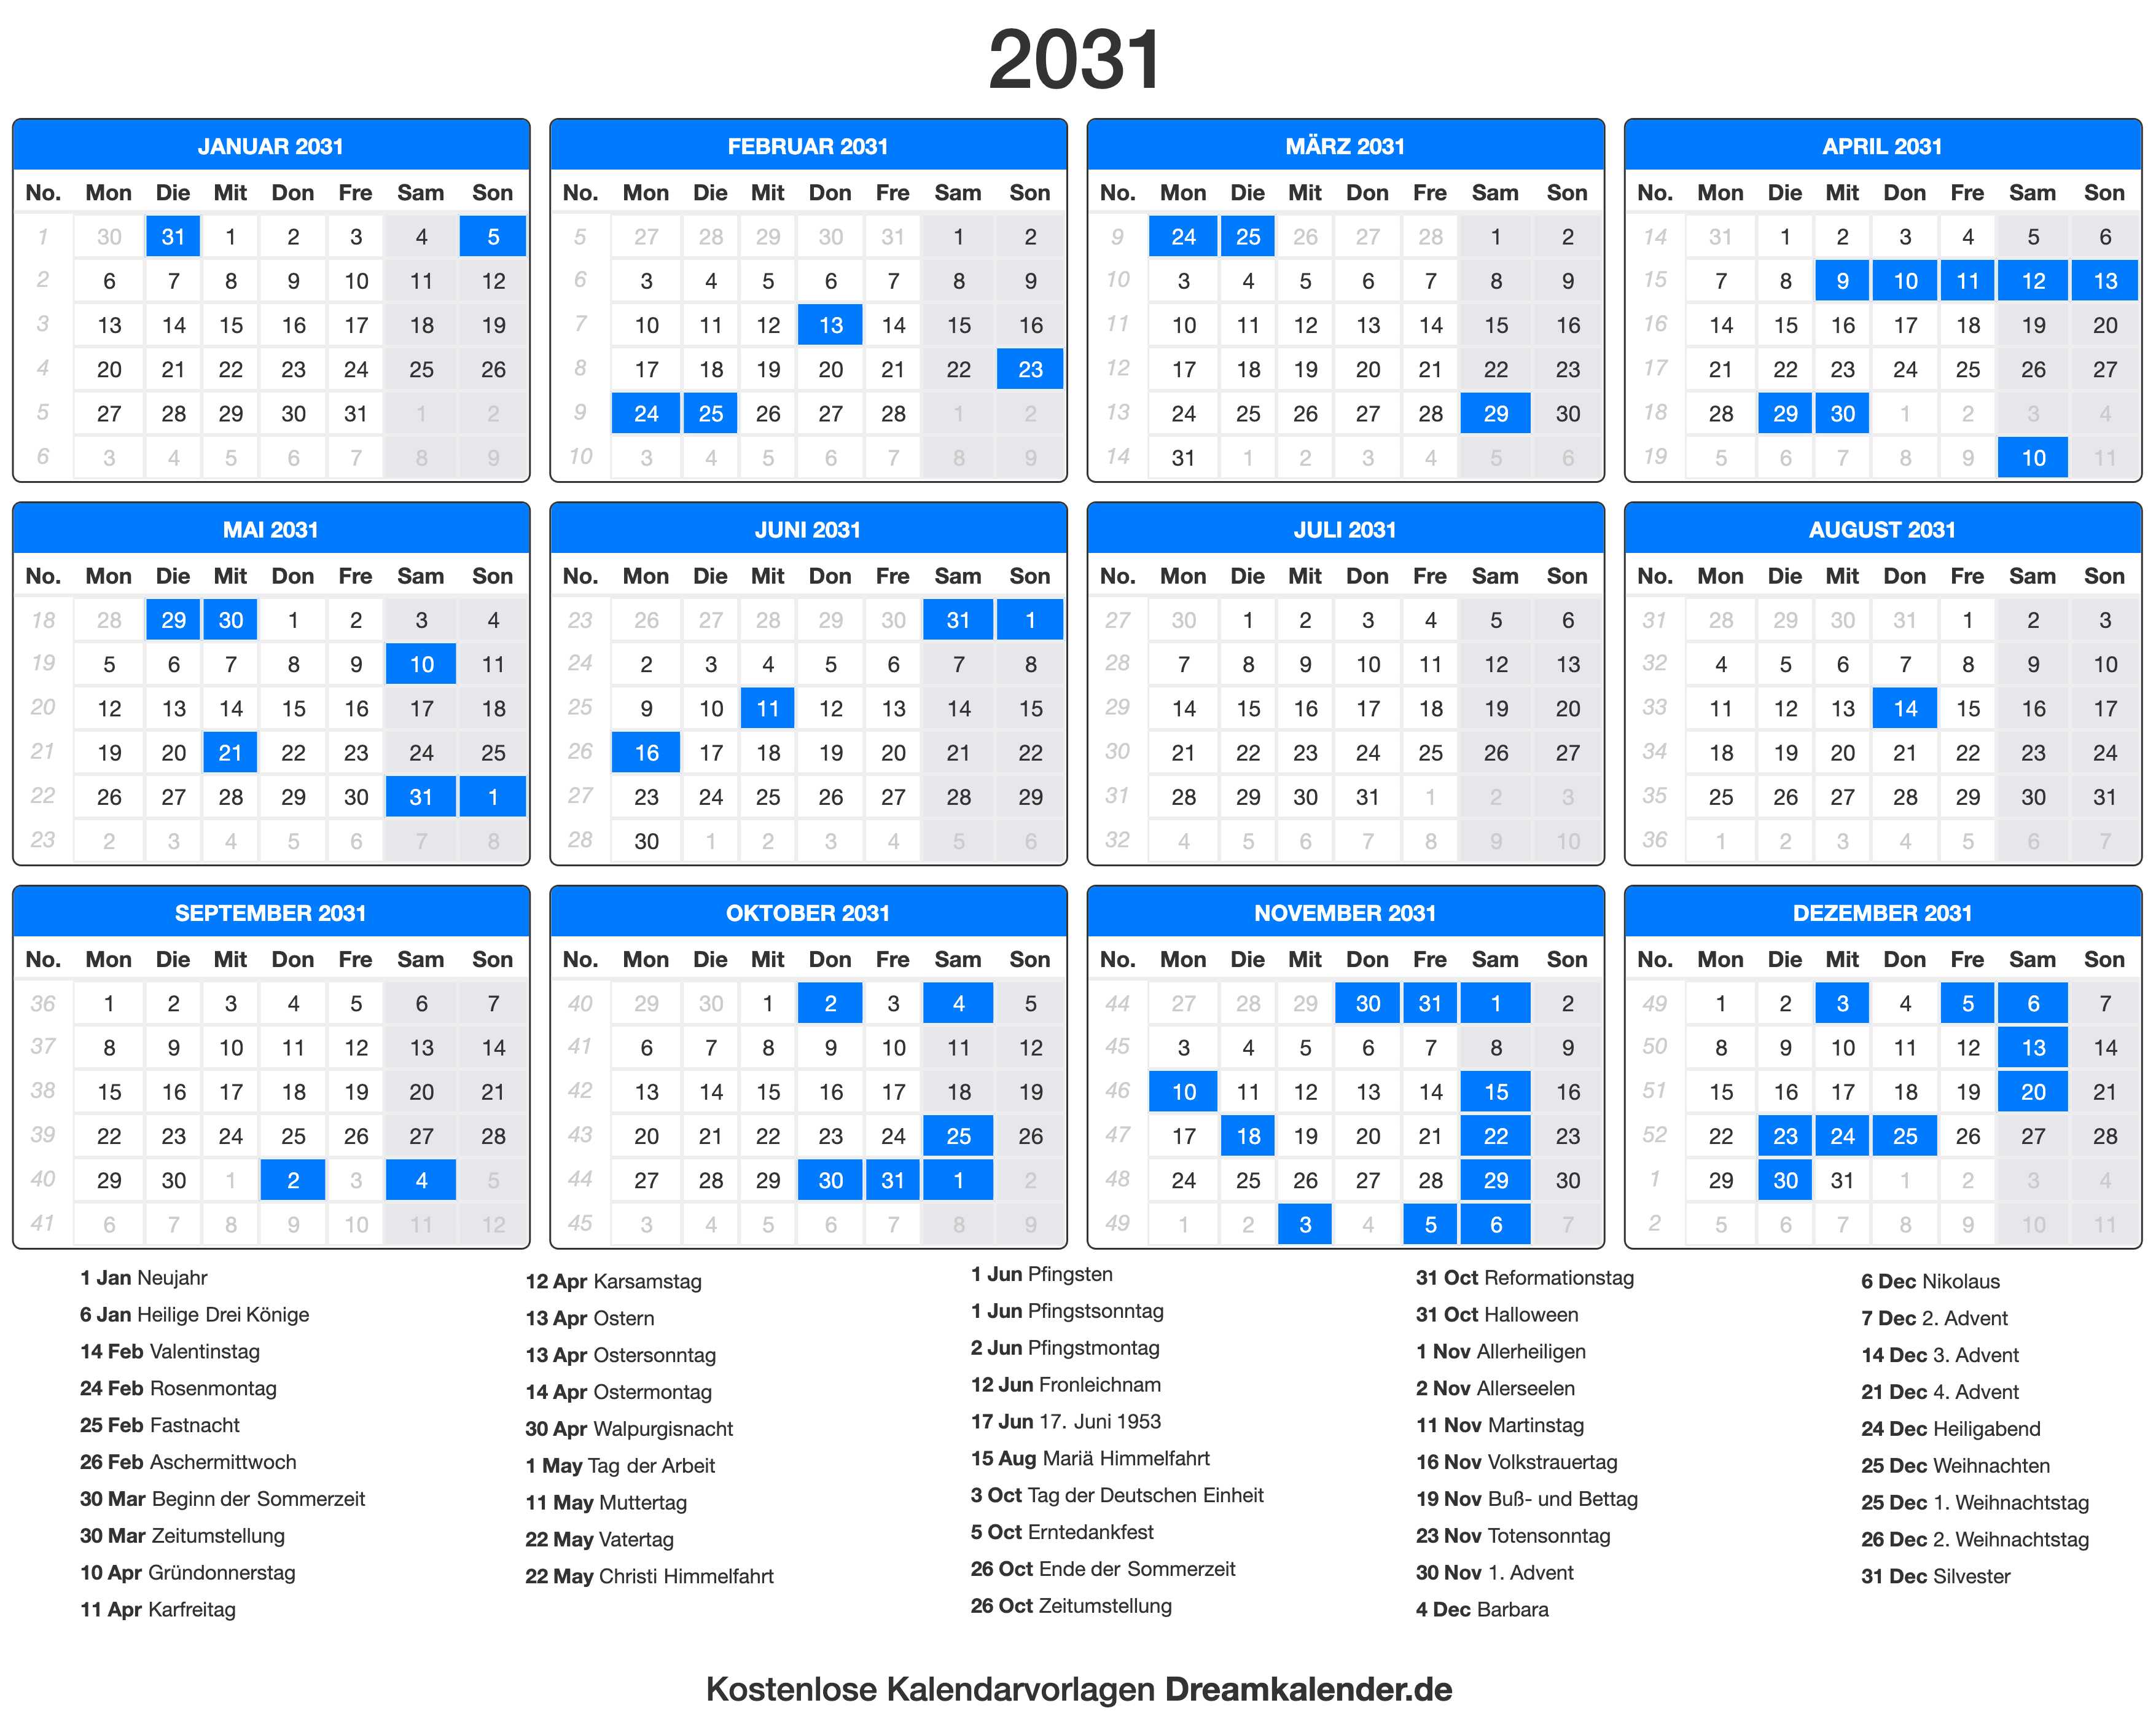 Сколько дней осталось до января 2025